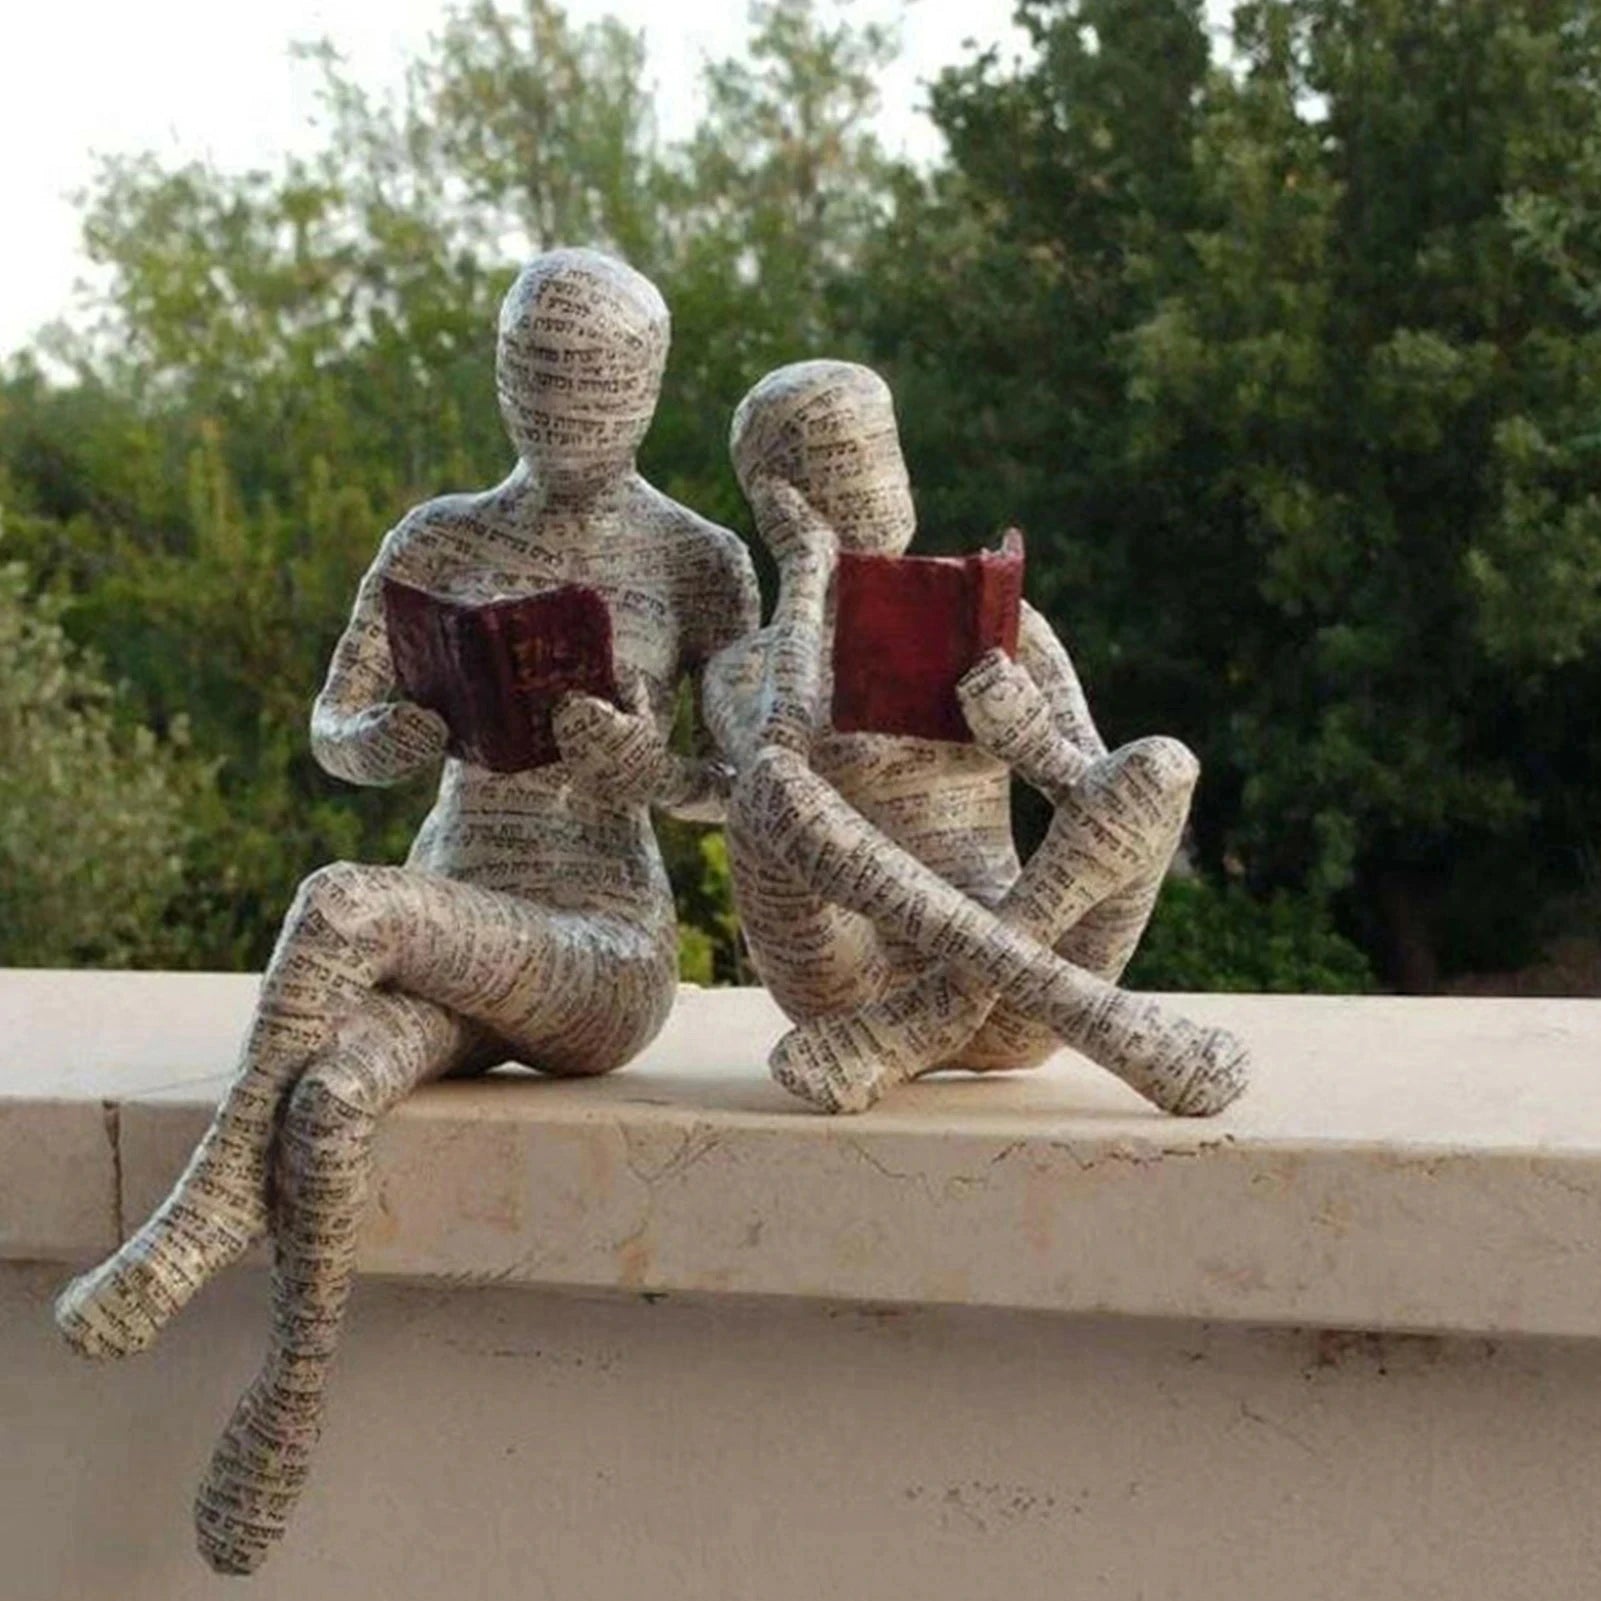 Wanita pulpa membaca buku hiasan gaya meditasi rumah resin patung patung patung abstrak untuk hiasan rumah moden